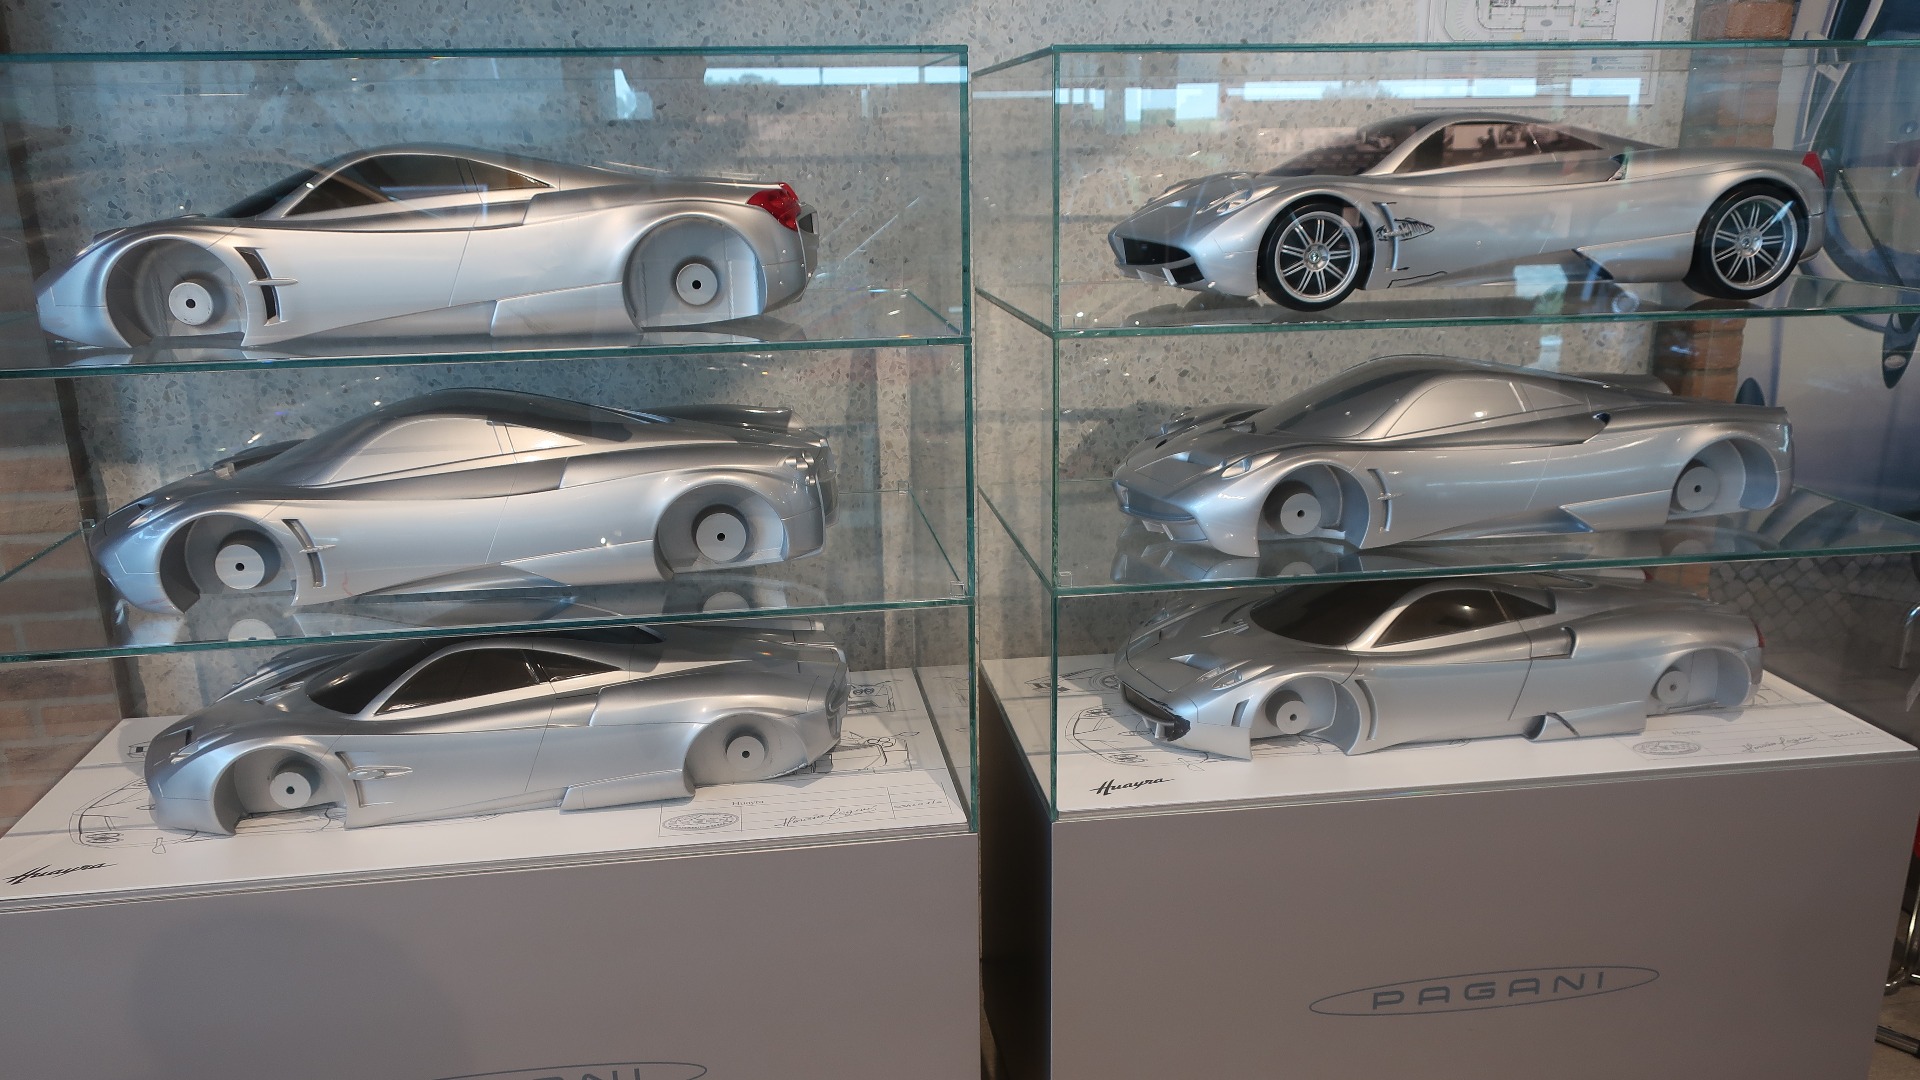 Ulike modeller av Huayra som viser litt av prosessen med å formgi en bil.